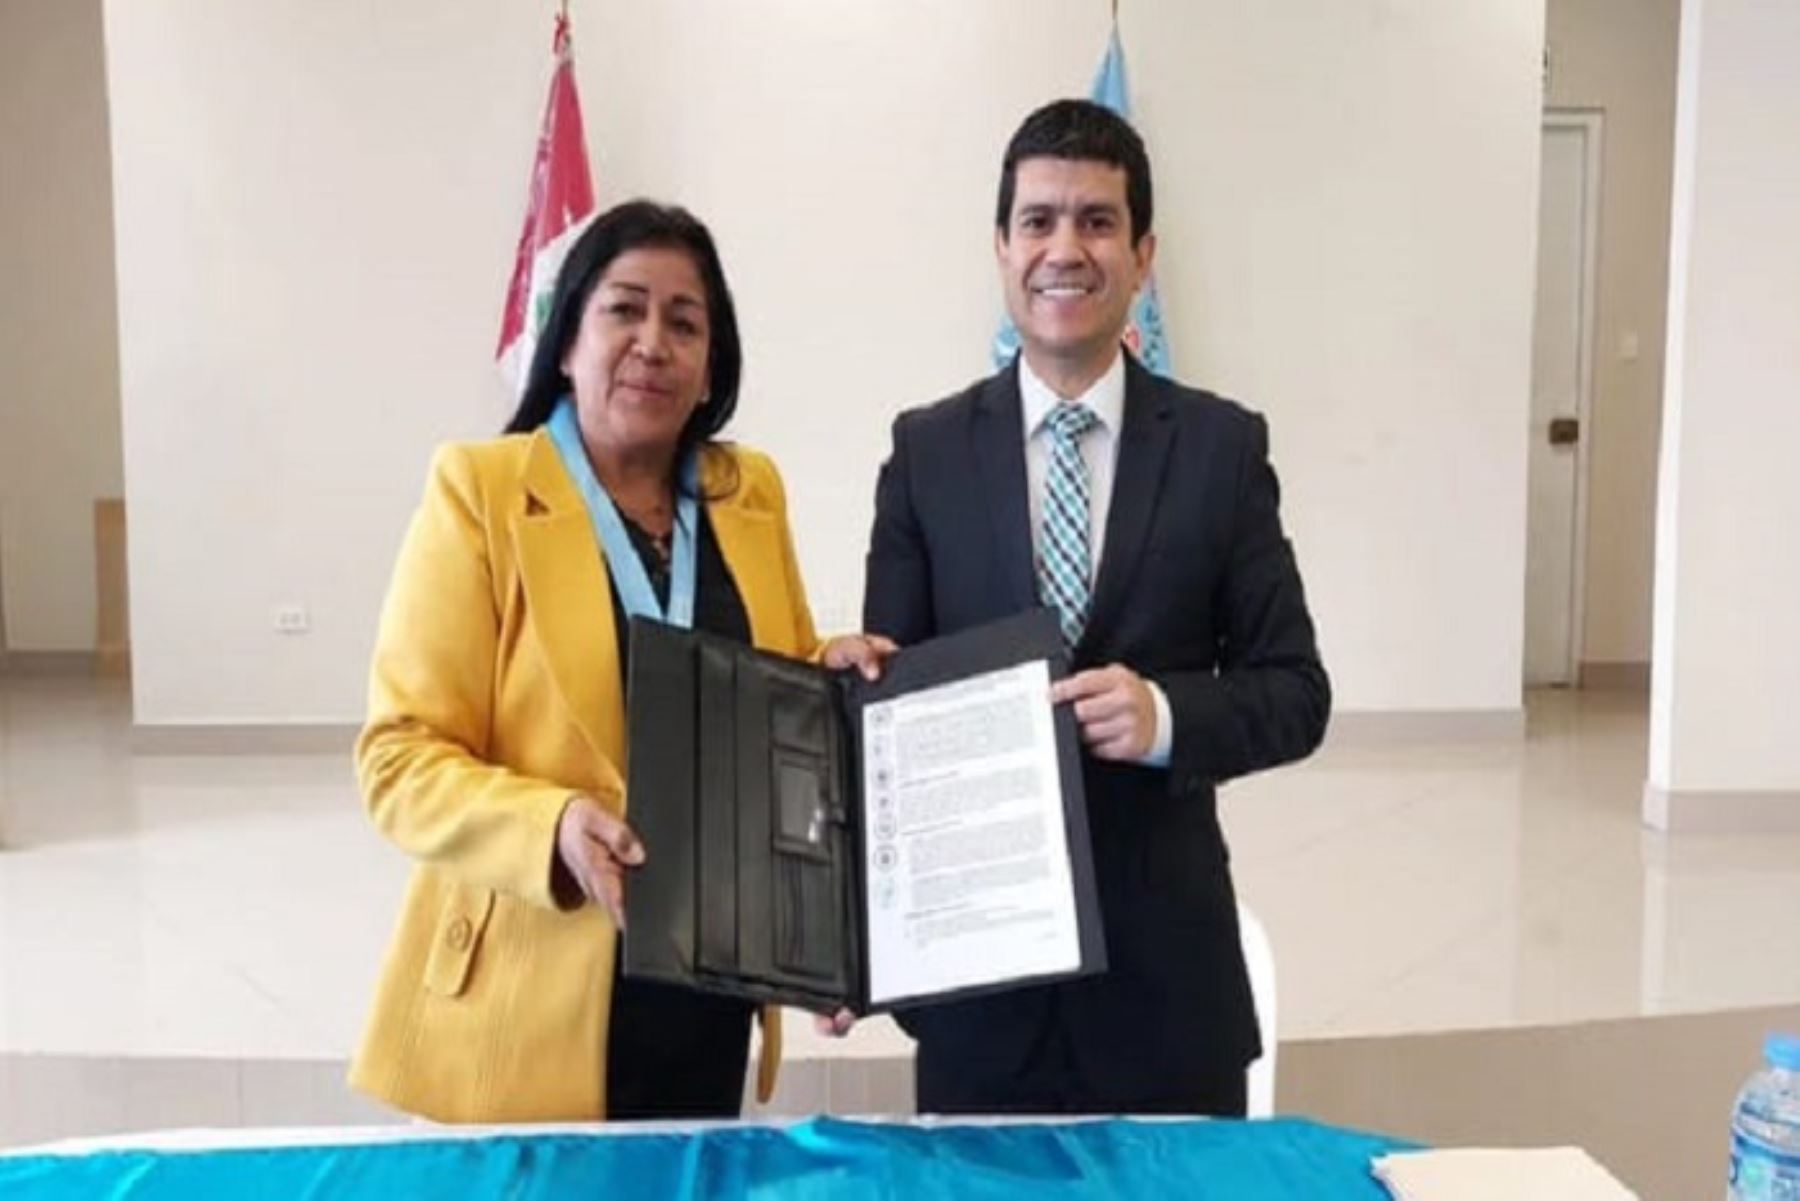 Los convenios fueron firmados por el superintendente de la SBN, Wilder Sifuentes Quilcate; el alcalde provincial de Huarmey, Cavino Cautivo Grasa; y la alcaldesa distrital de Nuevo Imperial, Carmen Ramos Oyolo.